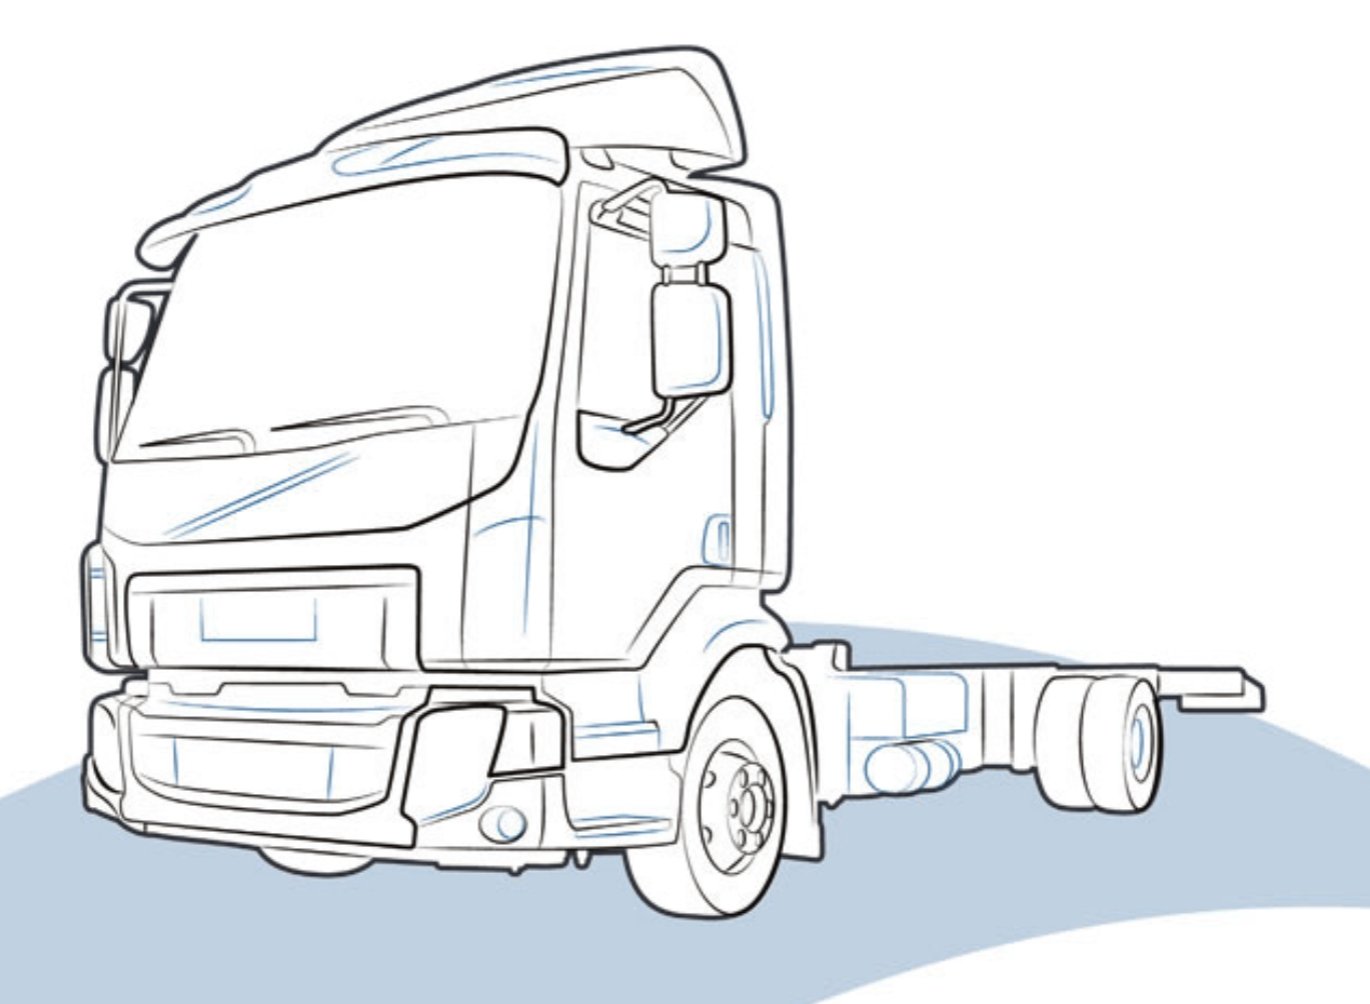 PLASTICA FANALE POSTERIORE DAF LF EURO 6 - 2028150 - Carrozzeria Truck